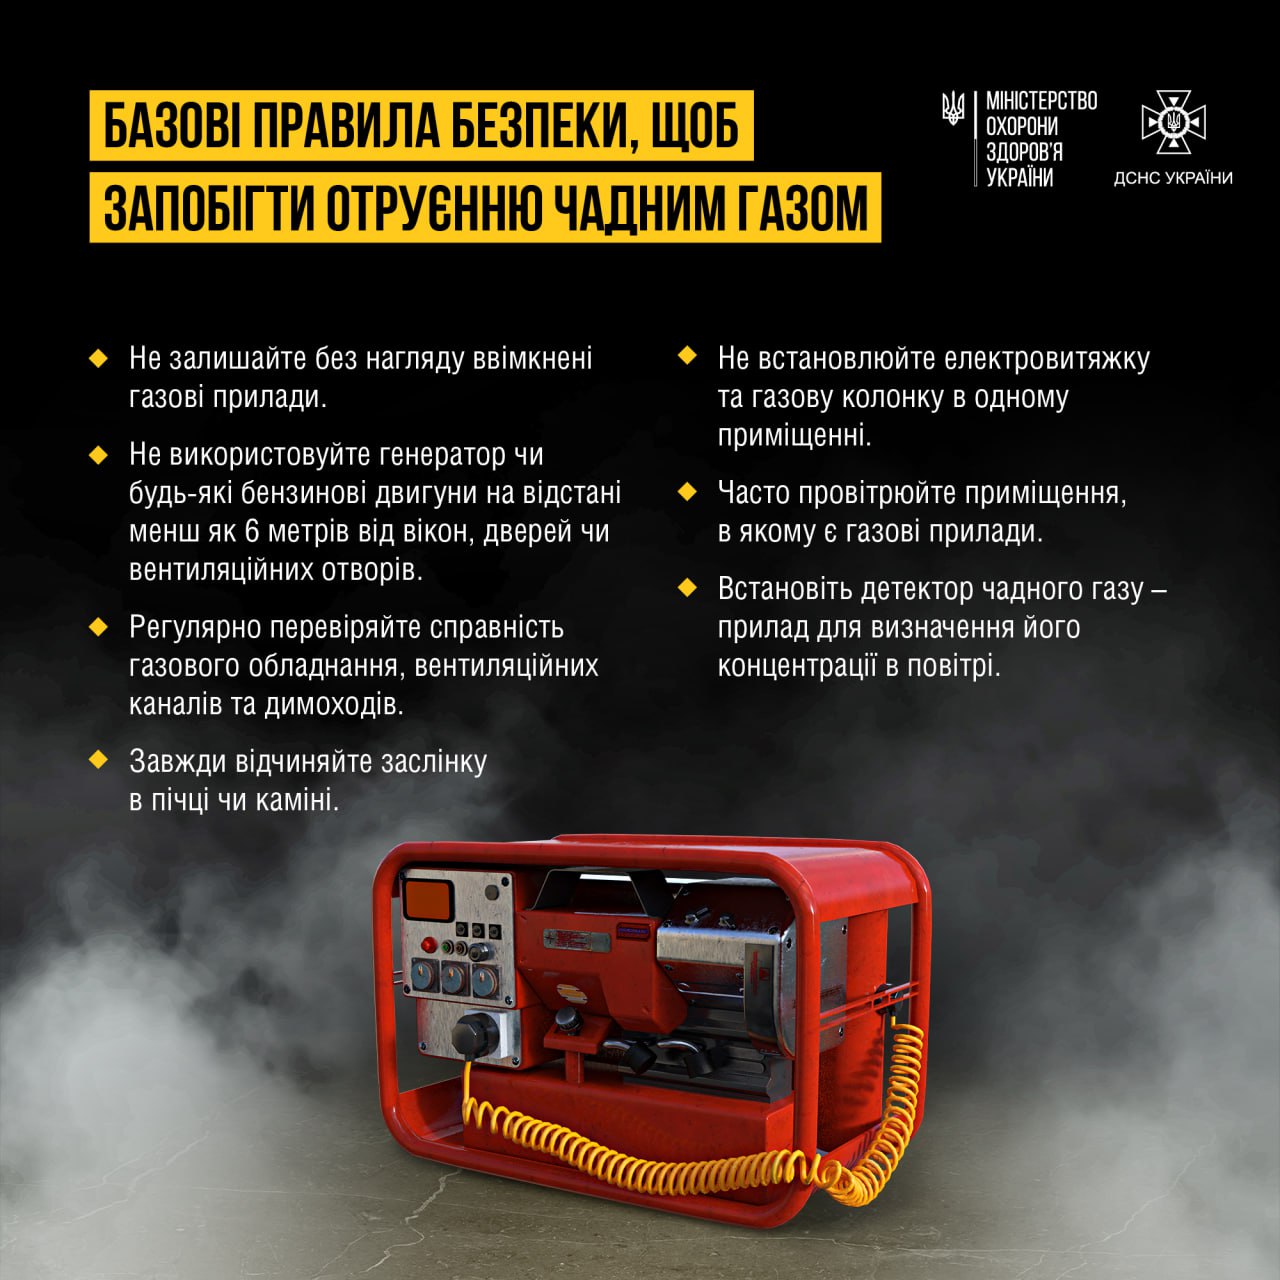 В Україні зростає кількість випадків отруєння чадним газом ─ деякі з них призводять до смерті